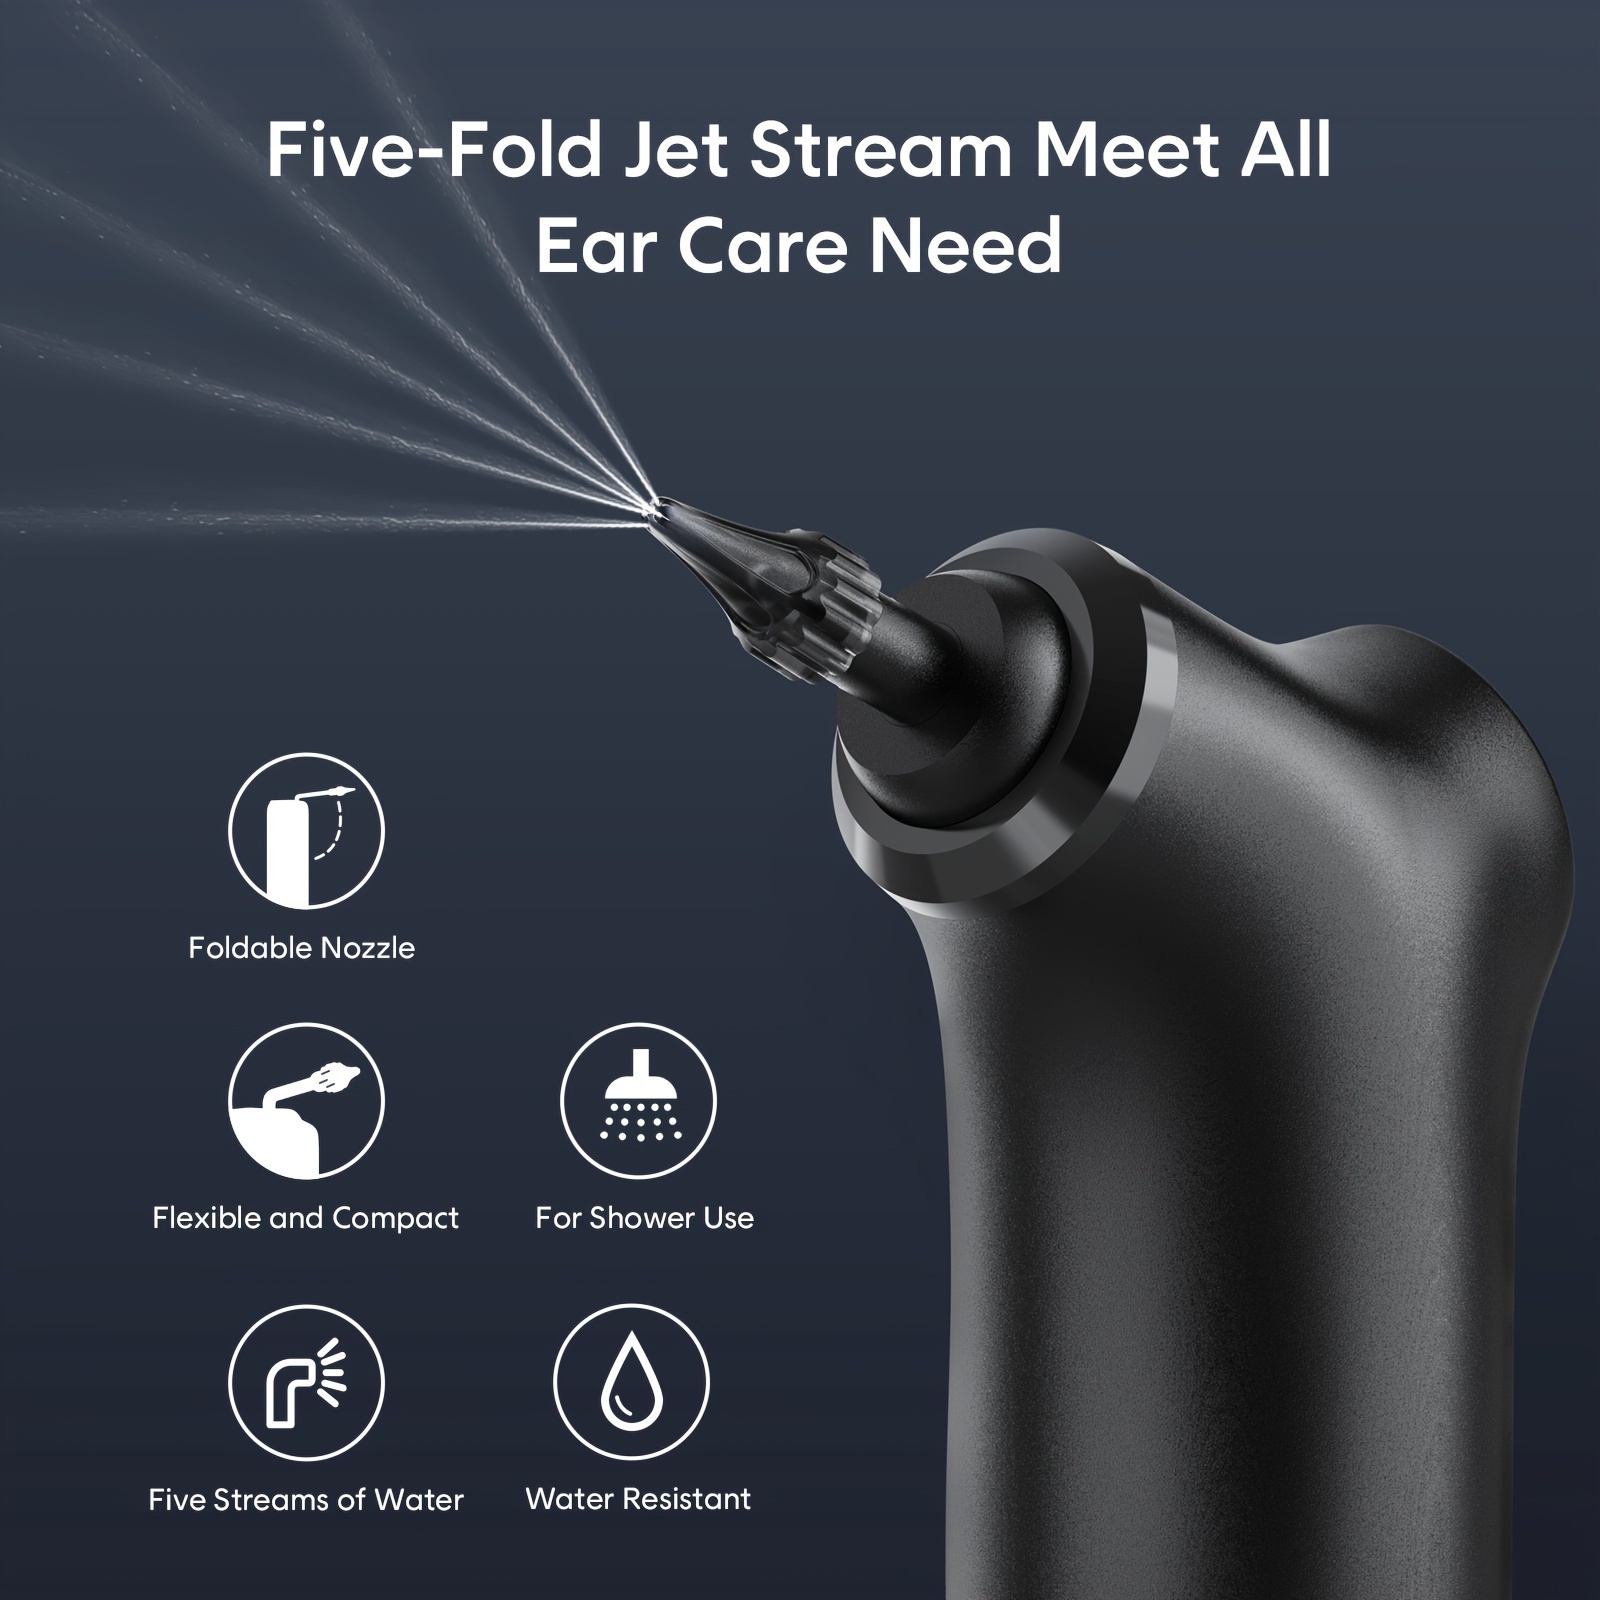 Lave - oreilles électrique Outil de nettoyage de la cire d'oreille